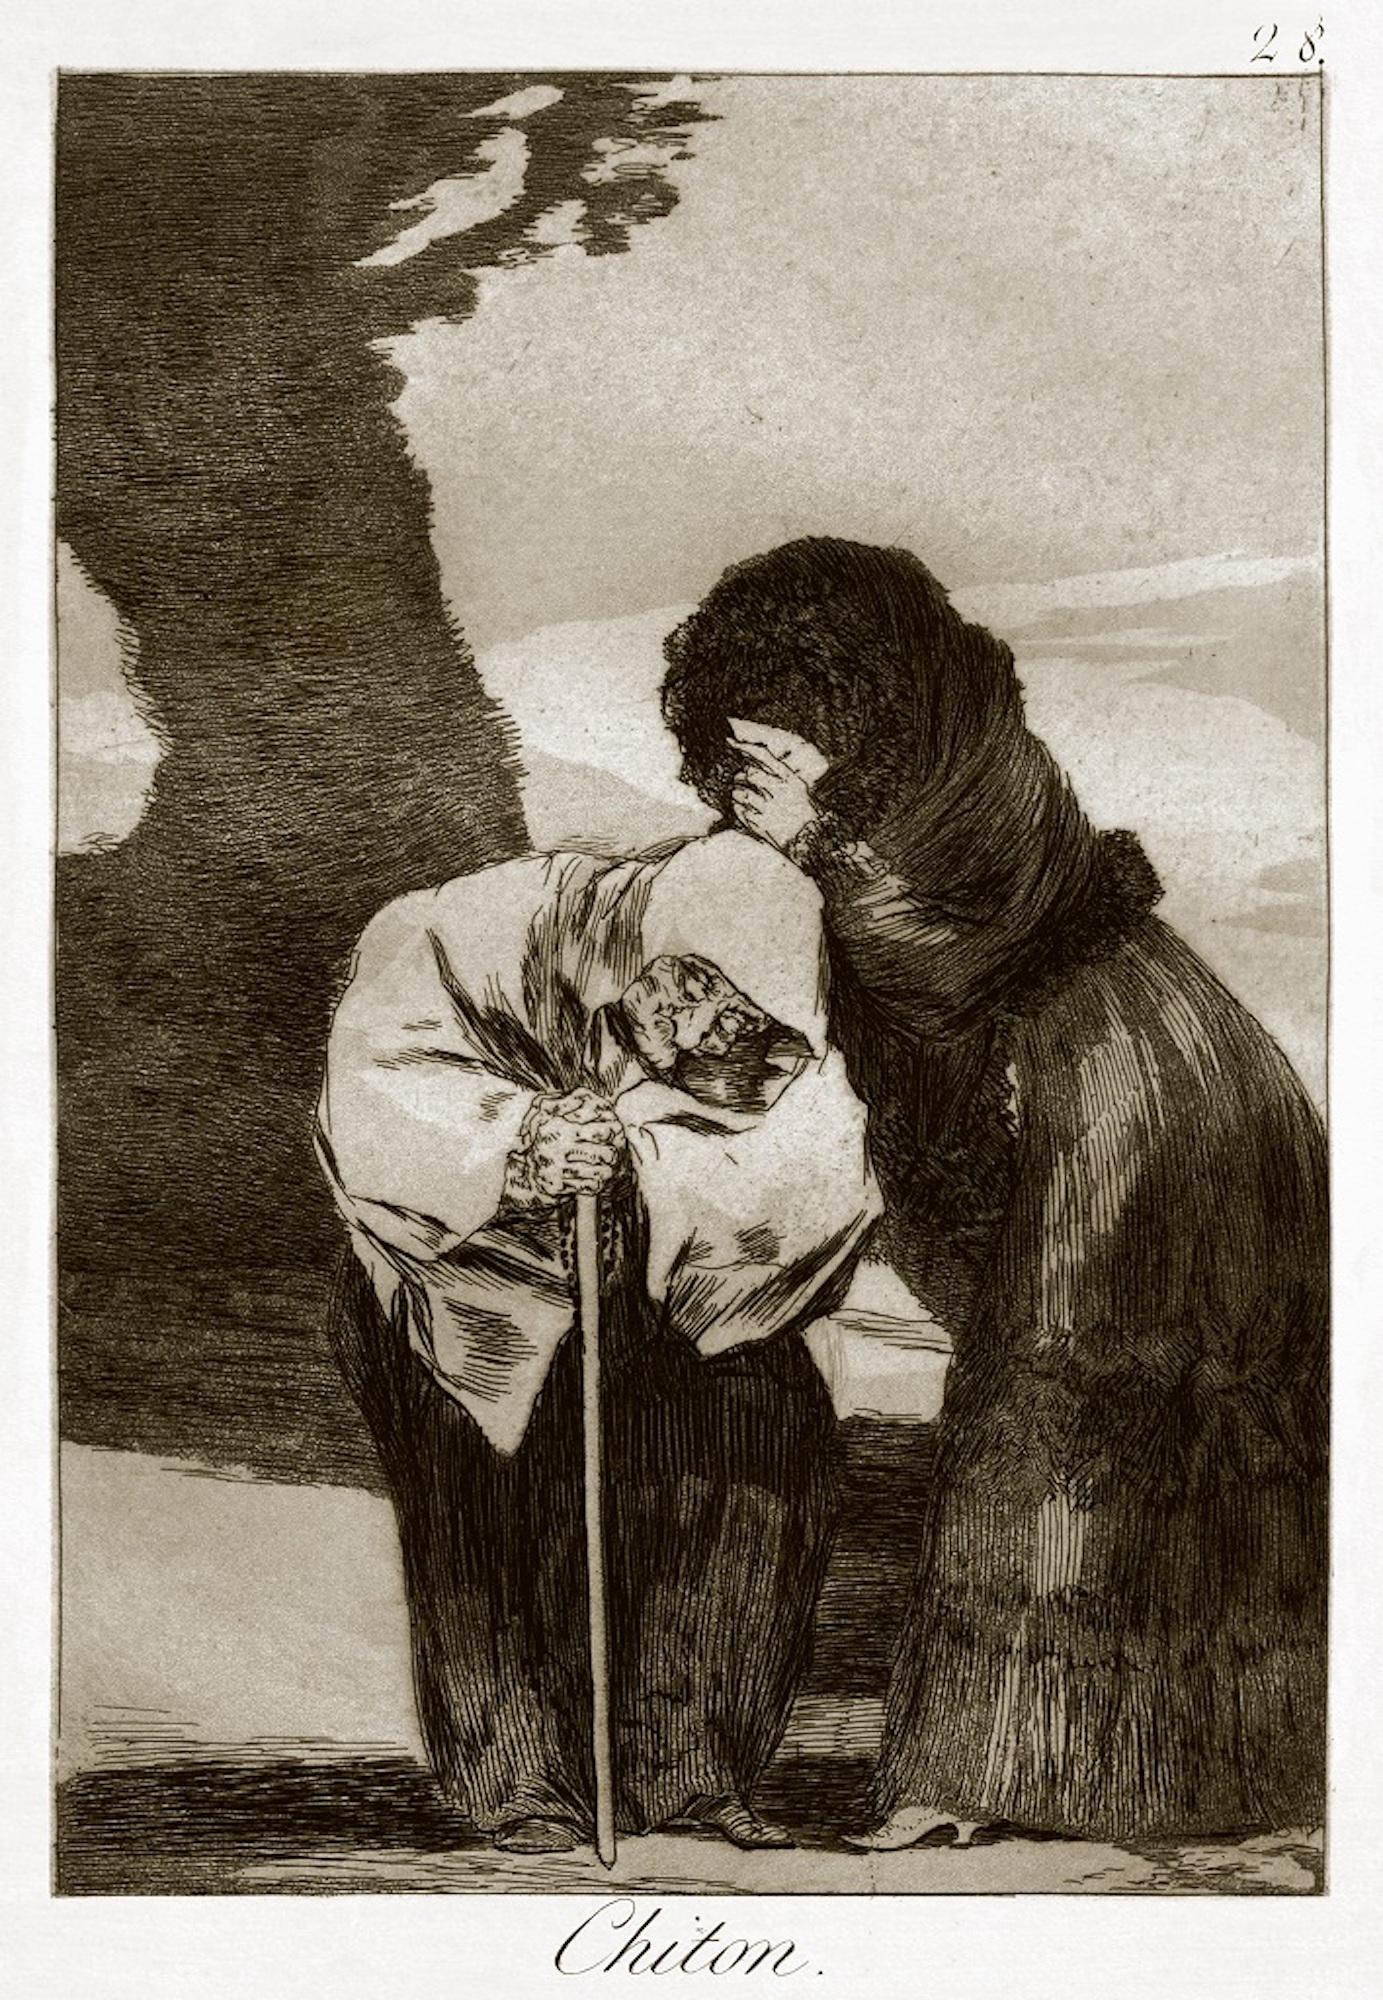 Chiton ist eine Original-Radierung von Francisco Goya, die 1799 zum ersten Mal veröffentlicht wurde.

Radierung auf Papier.

Die Platte gehört zur dritten Ausgabe von "Los Caprichos", die 1868 von der Calcografia Nacional für die Real Academia